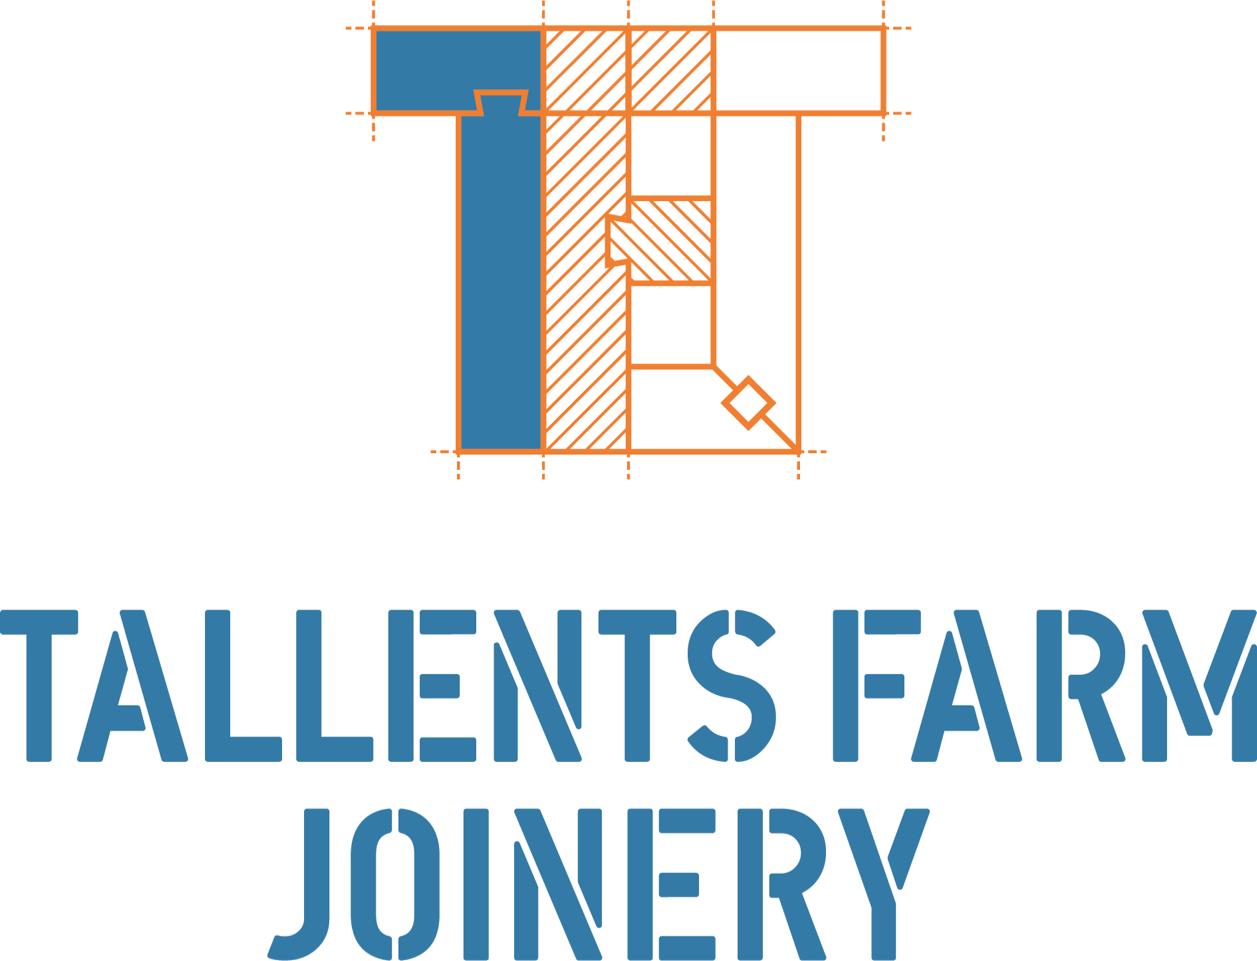 Tallents Farm Joinery Ltd logo